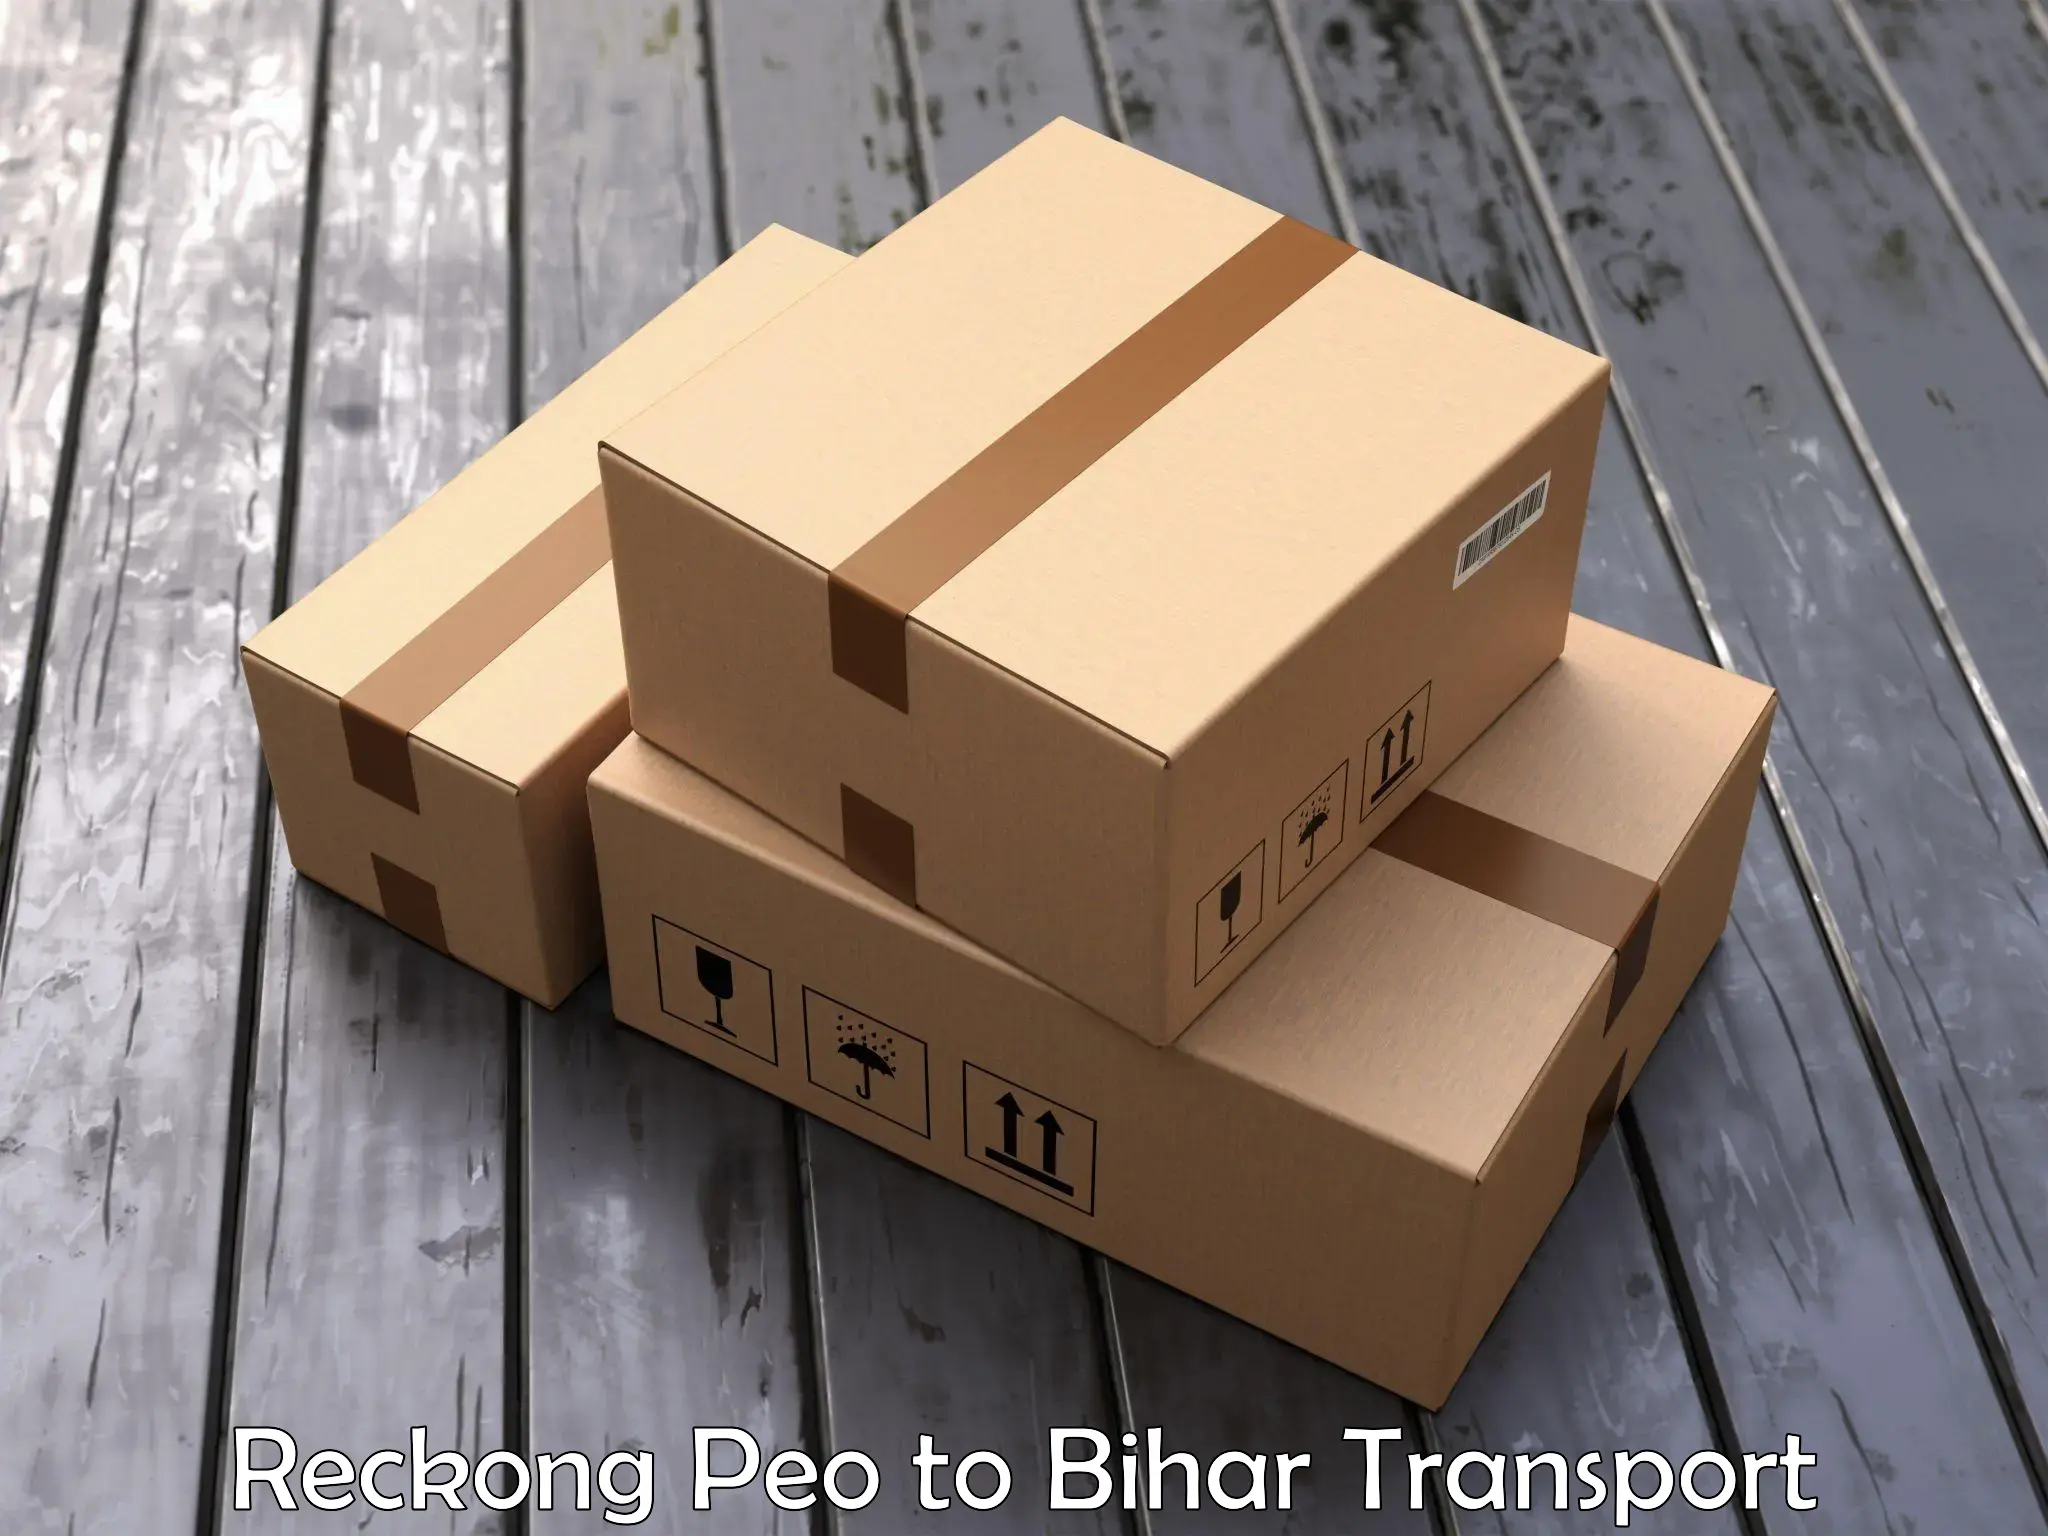 Transport in sharing Reckong Peo to Tekari